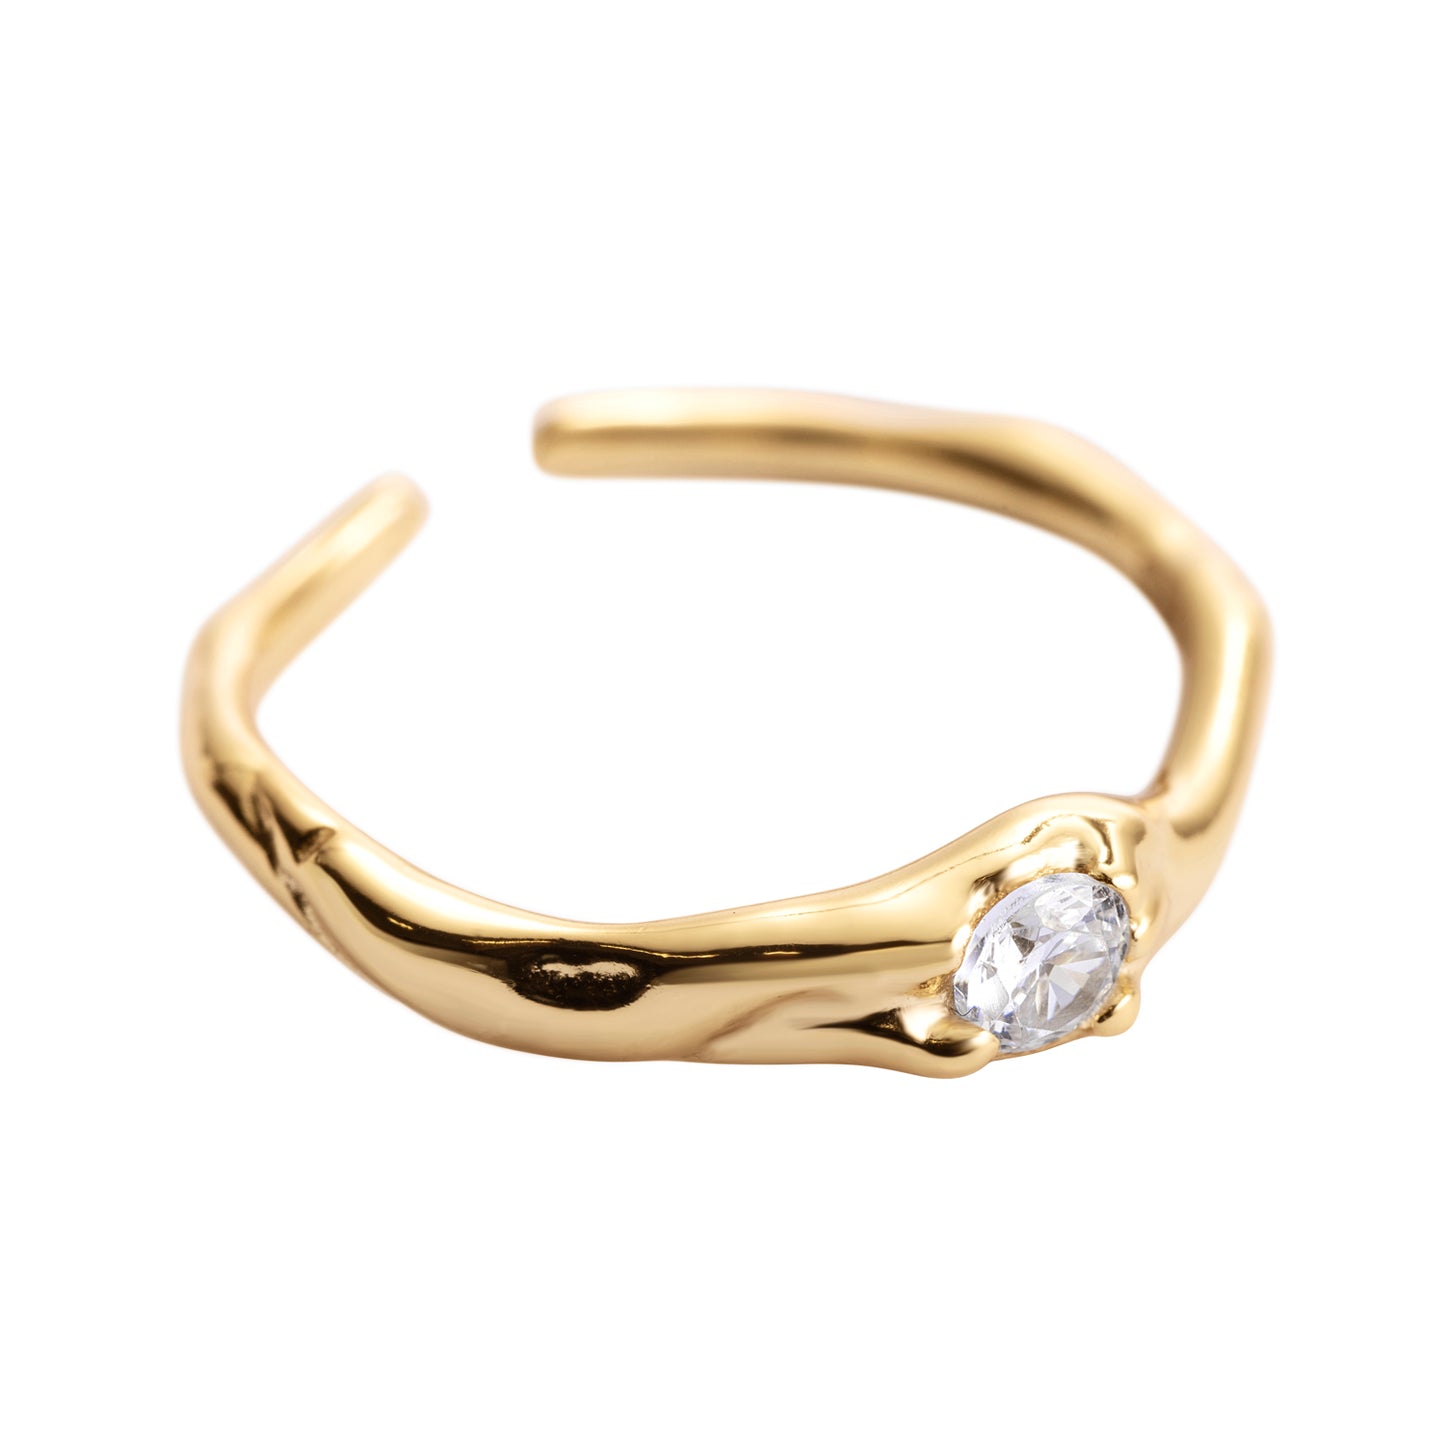 Celestial Gem resizable golden ring